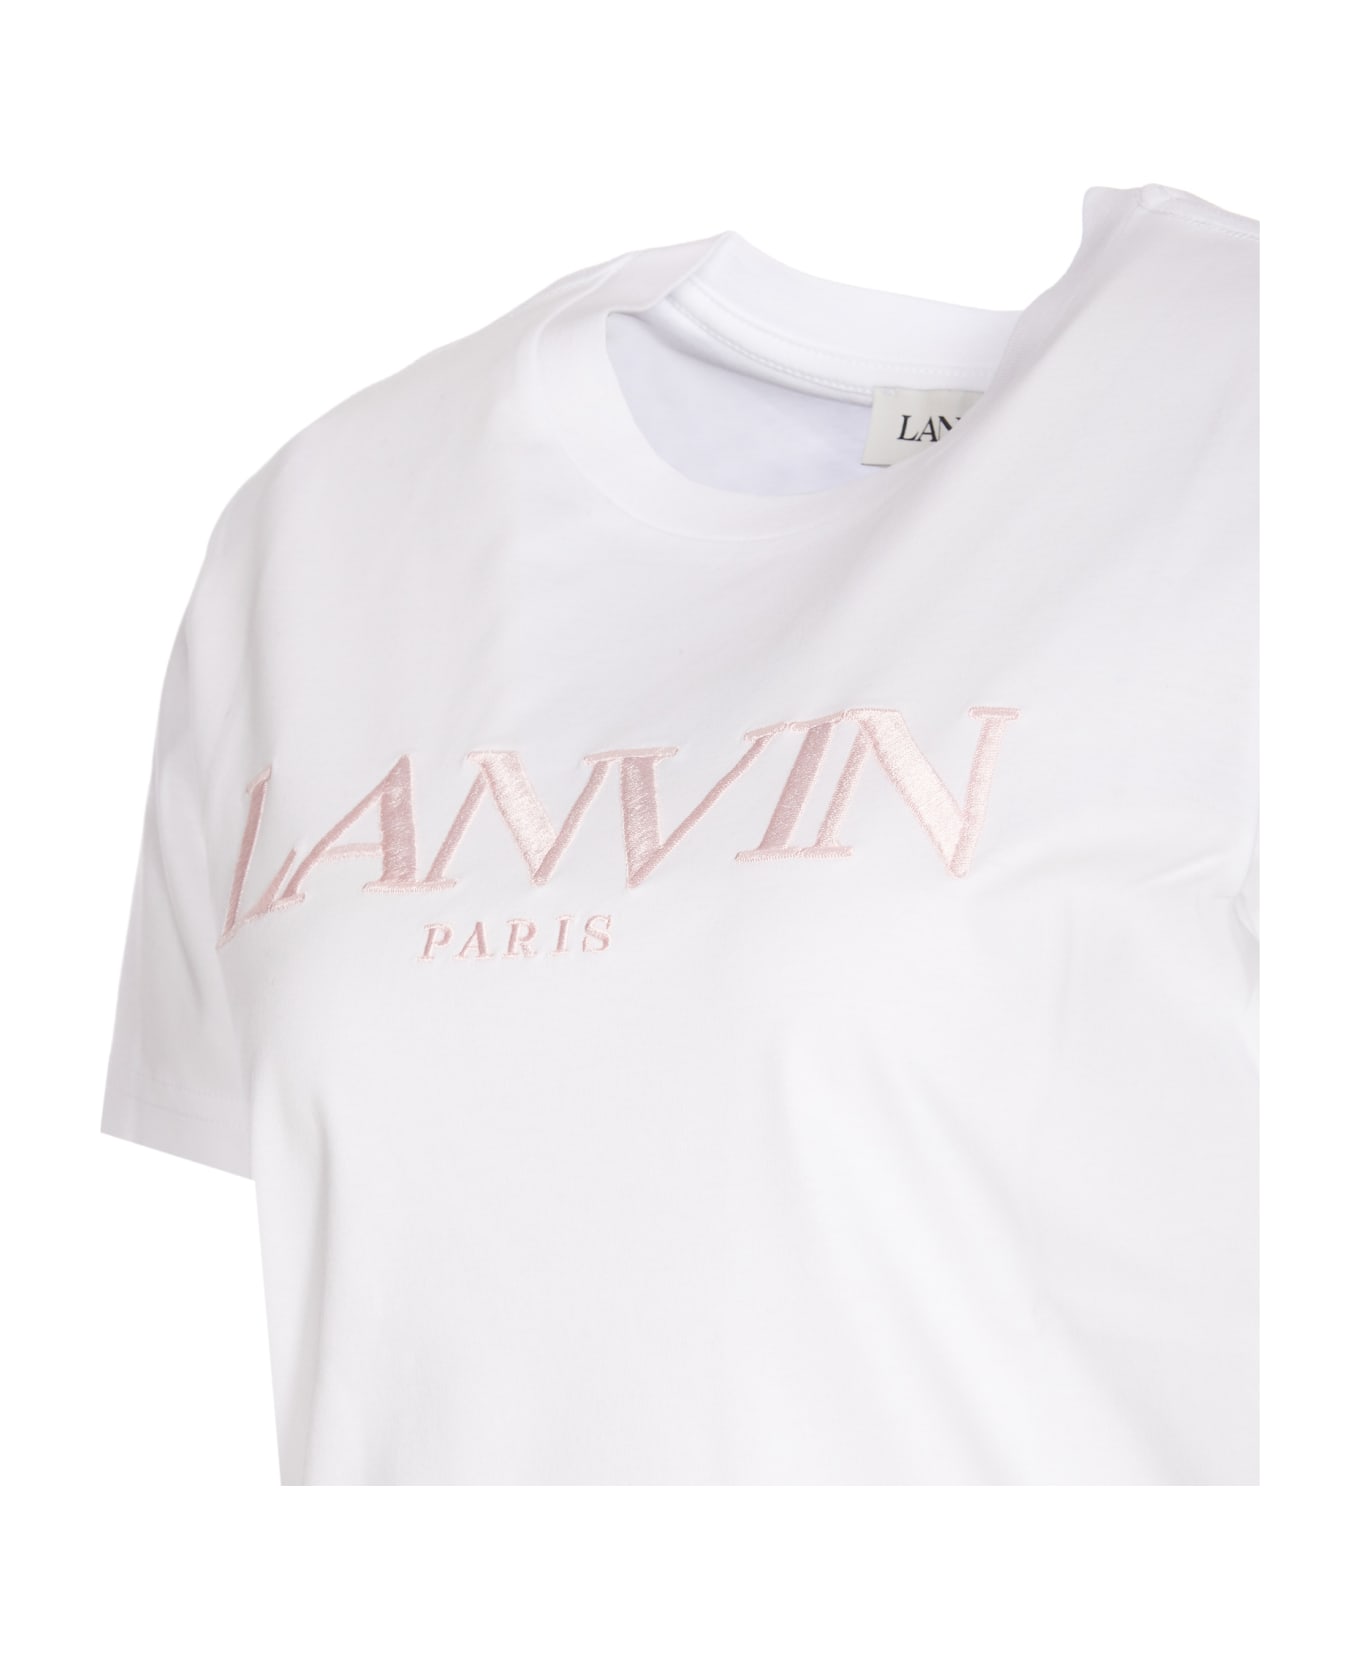 Lanvin Logo T-shirt - White